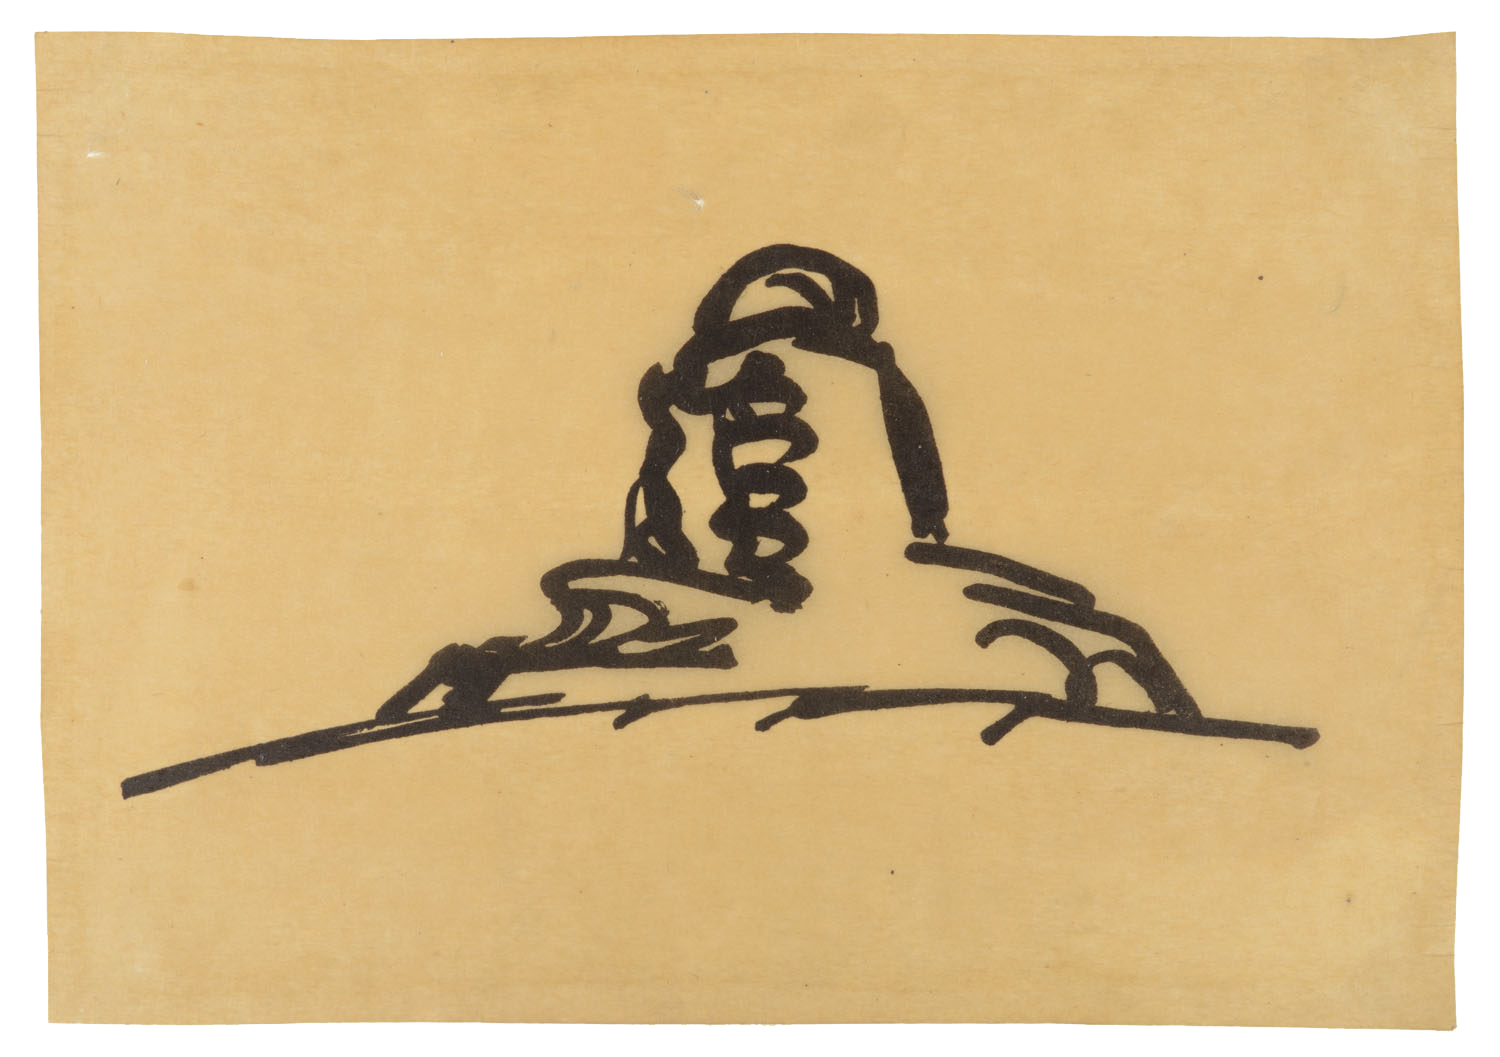 letzte Entwurfsskizze Mendelsohns für den Einsteinturm, 1920